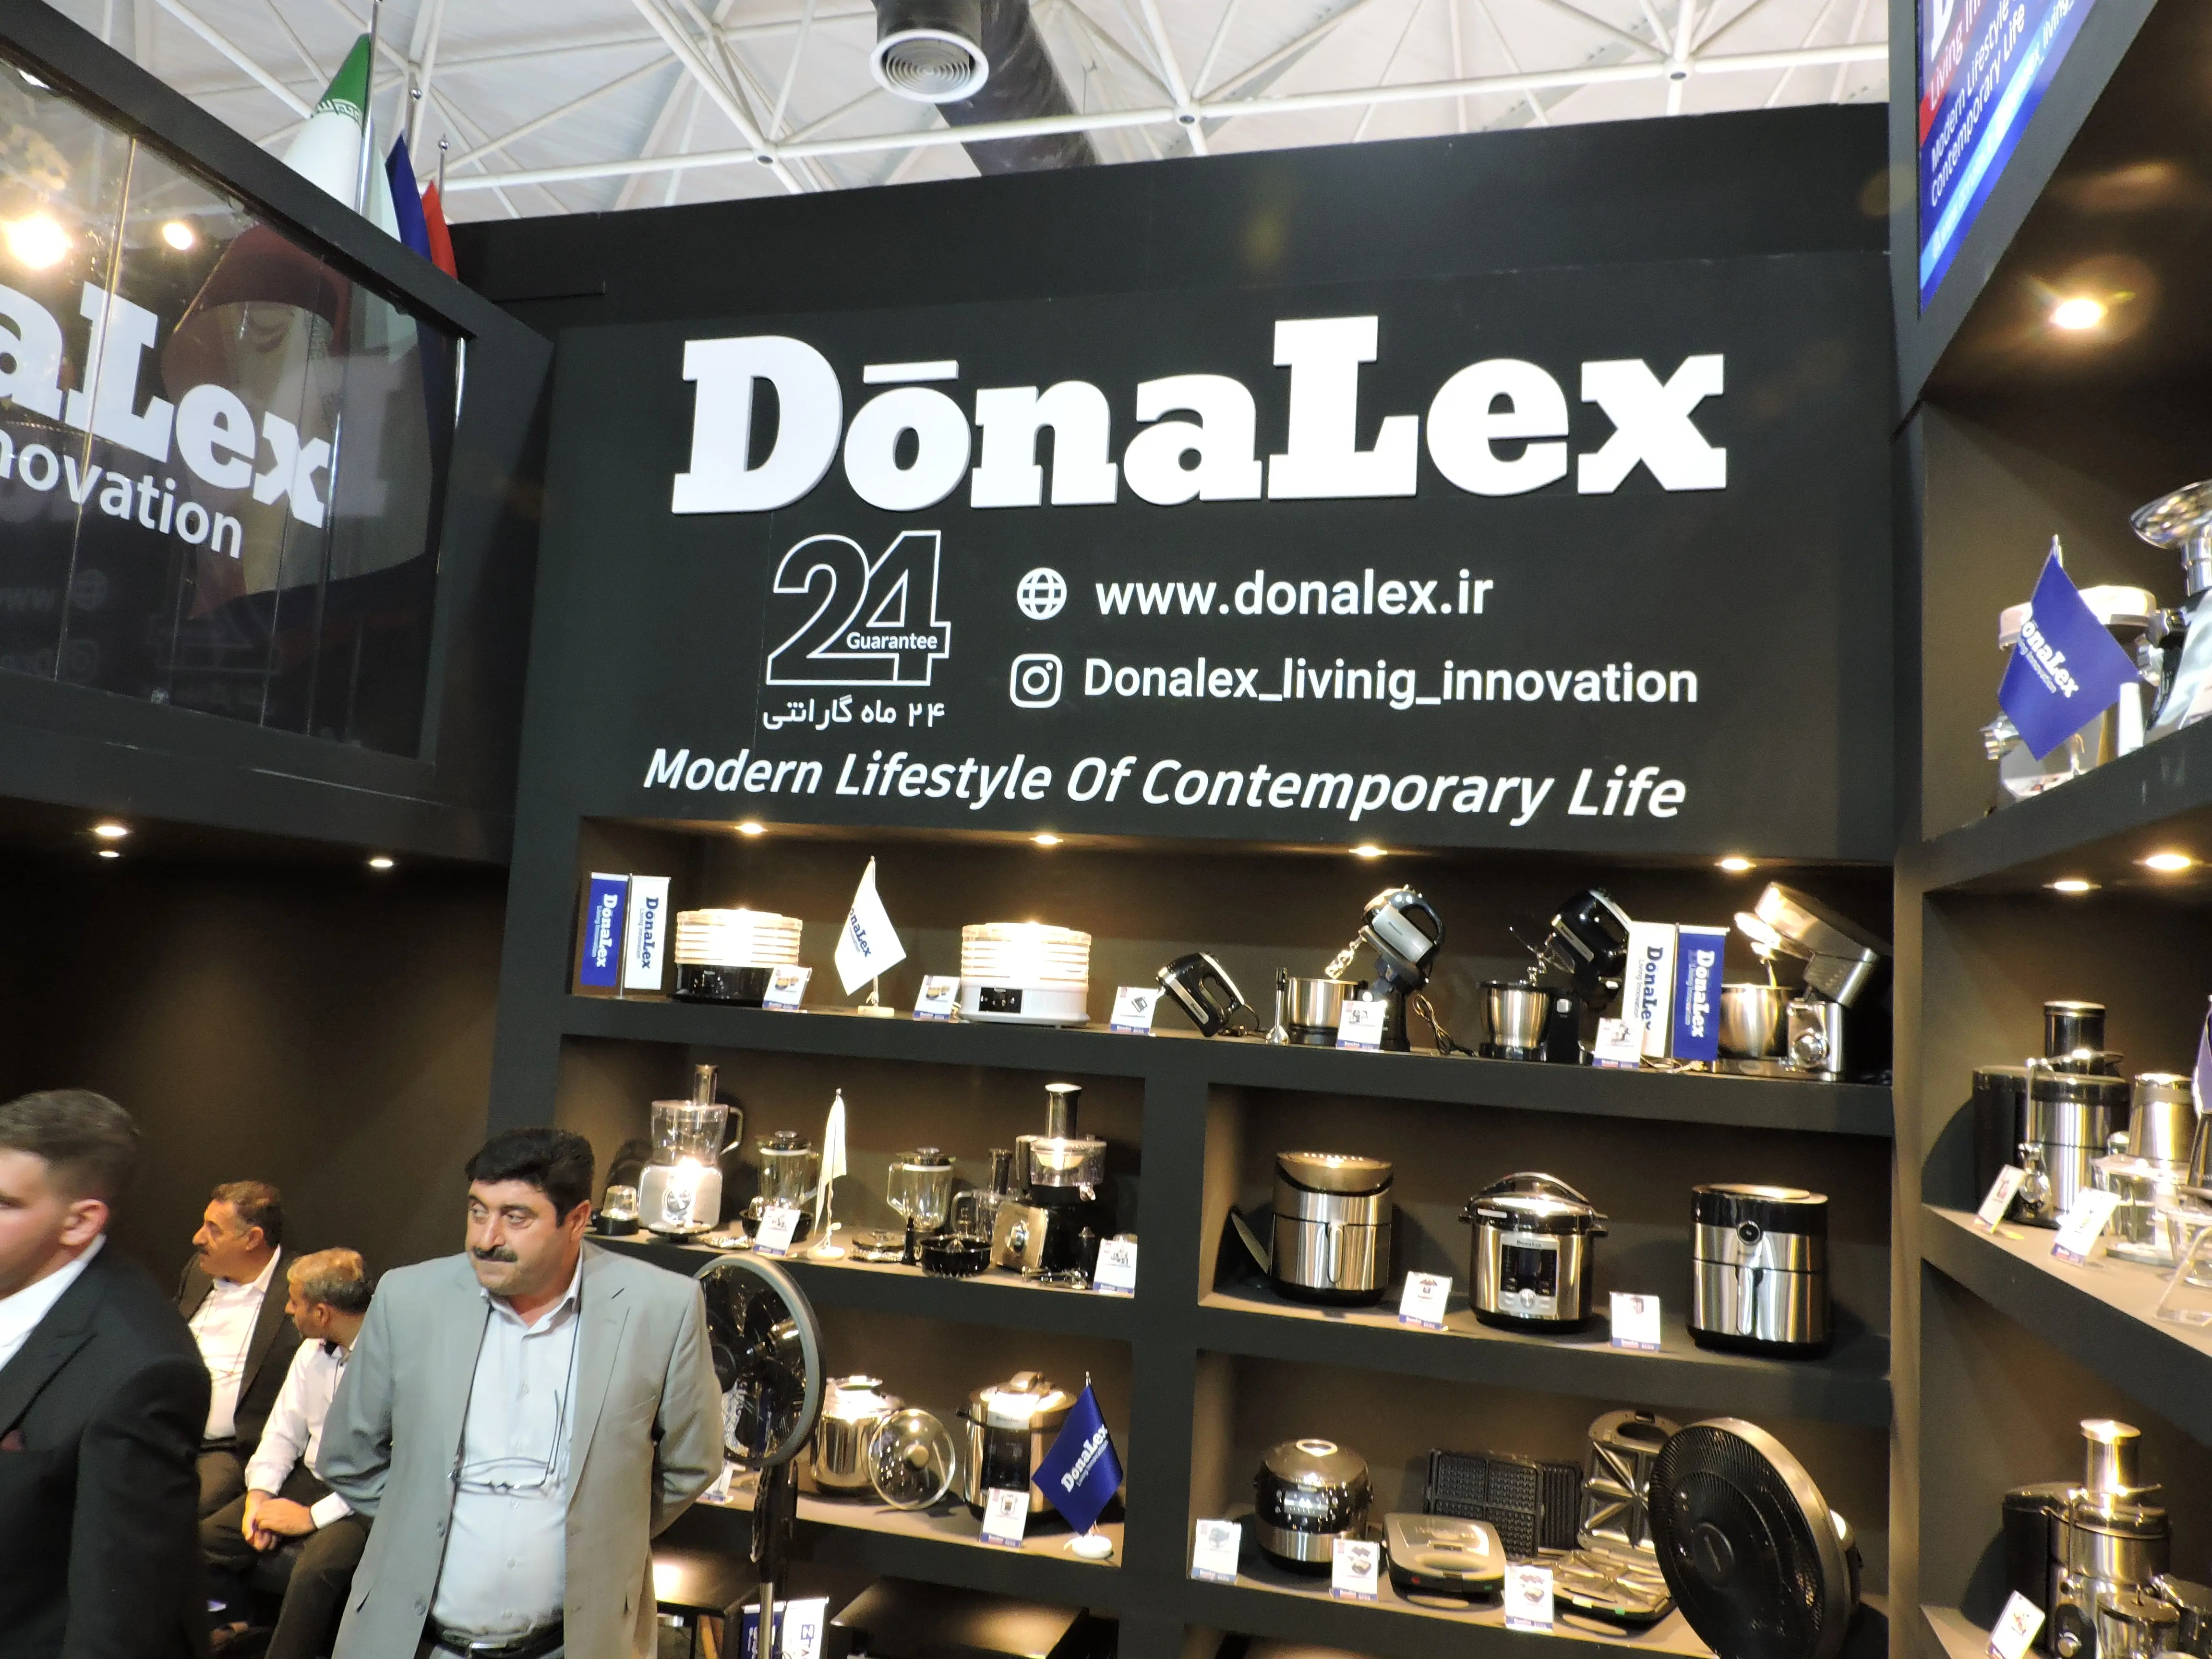 اولین حضور دونالکس در نمایشگاه هامکس با استقبال خوب همراه شد/ بهره‌برداری از خط تولید جدید دونالکس در سال آینده 